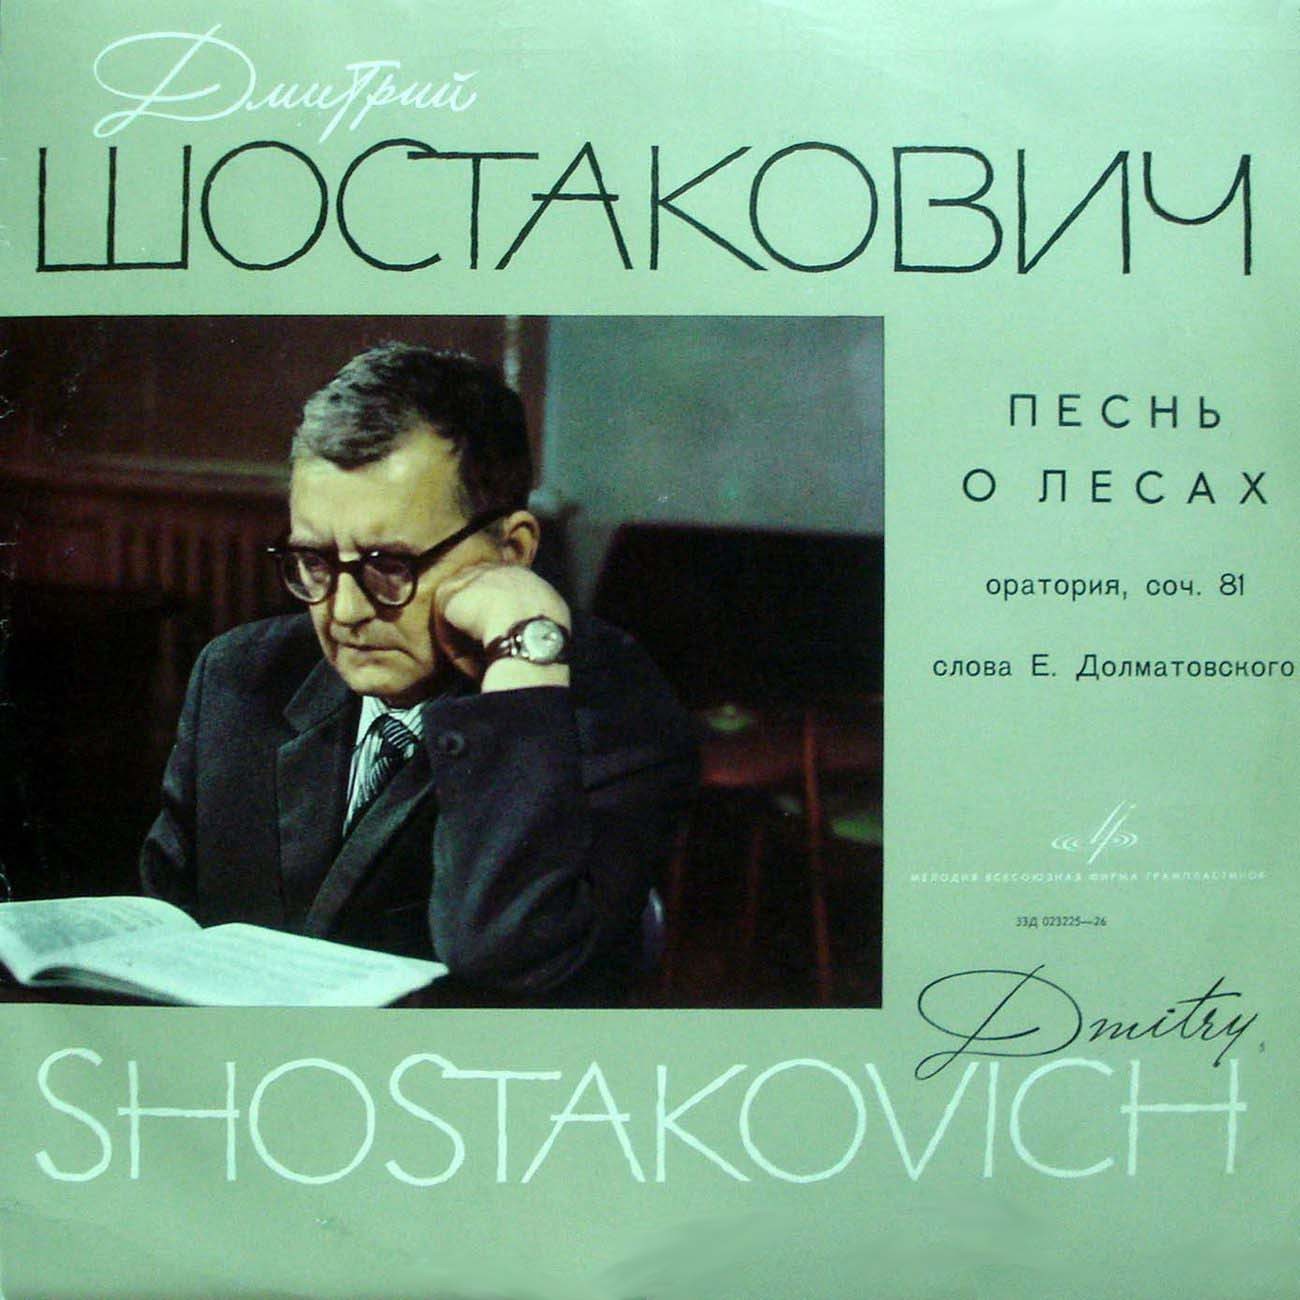 Д. ШОСТАКОВИЧ (1906–1975): «Песнь о лесах», оратория на слова Е. Долматовского, соч. 81